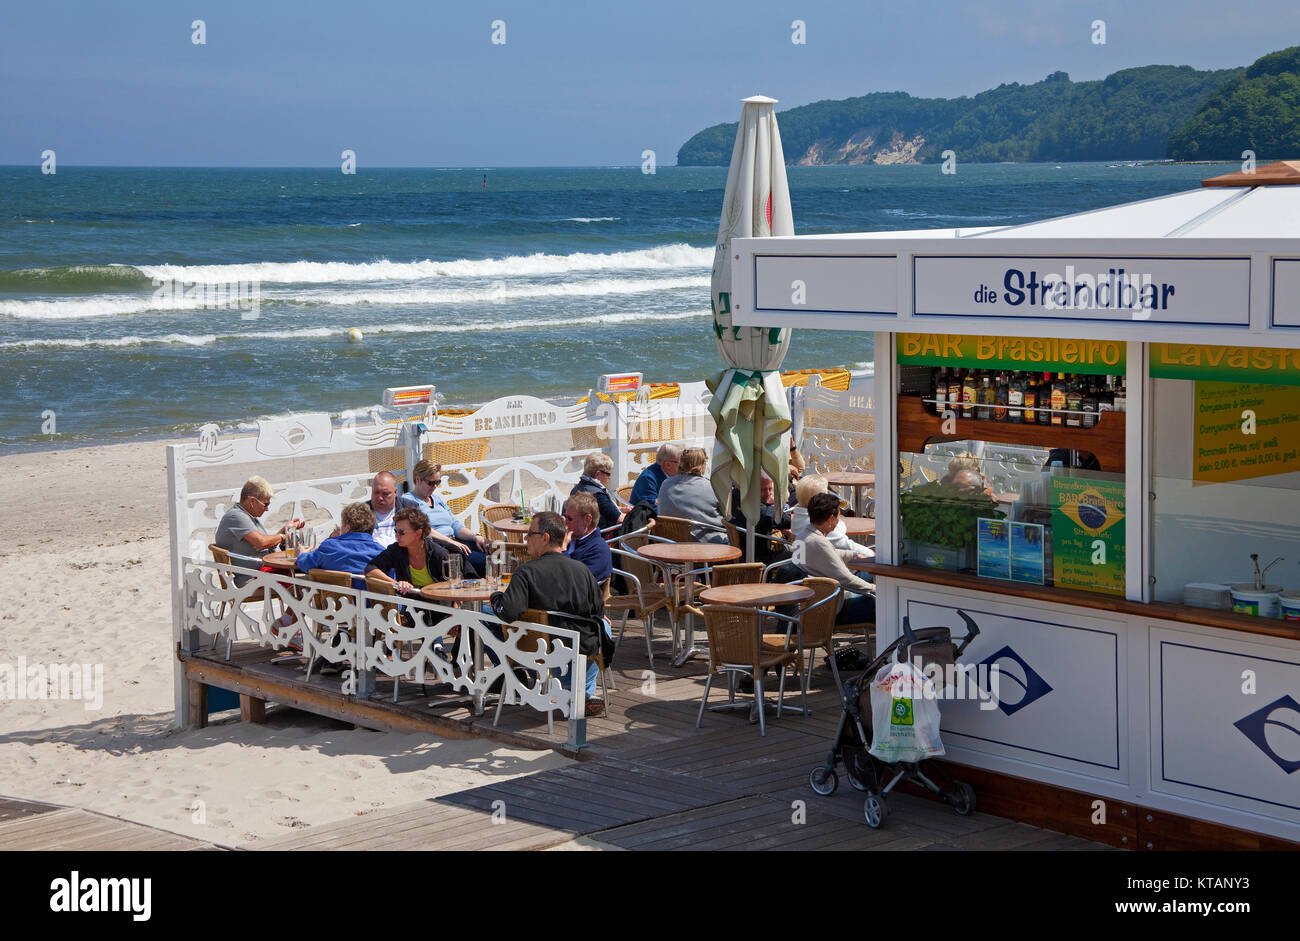 Strandbar an der Seebrücke von Binz, Insel Rügen, Mecklenburg-Vorpommern, Ostsee, Deutschland, Europa Stockfoto